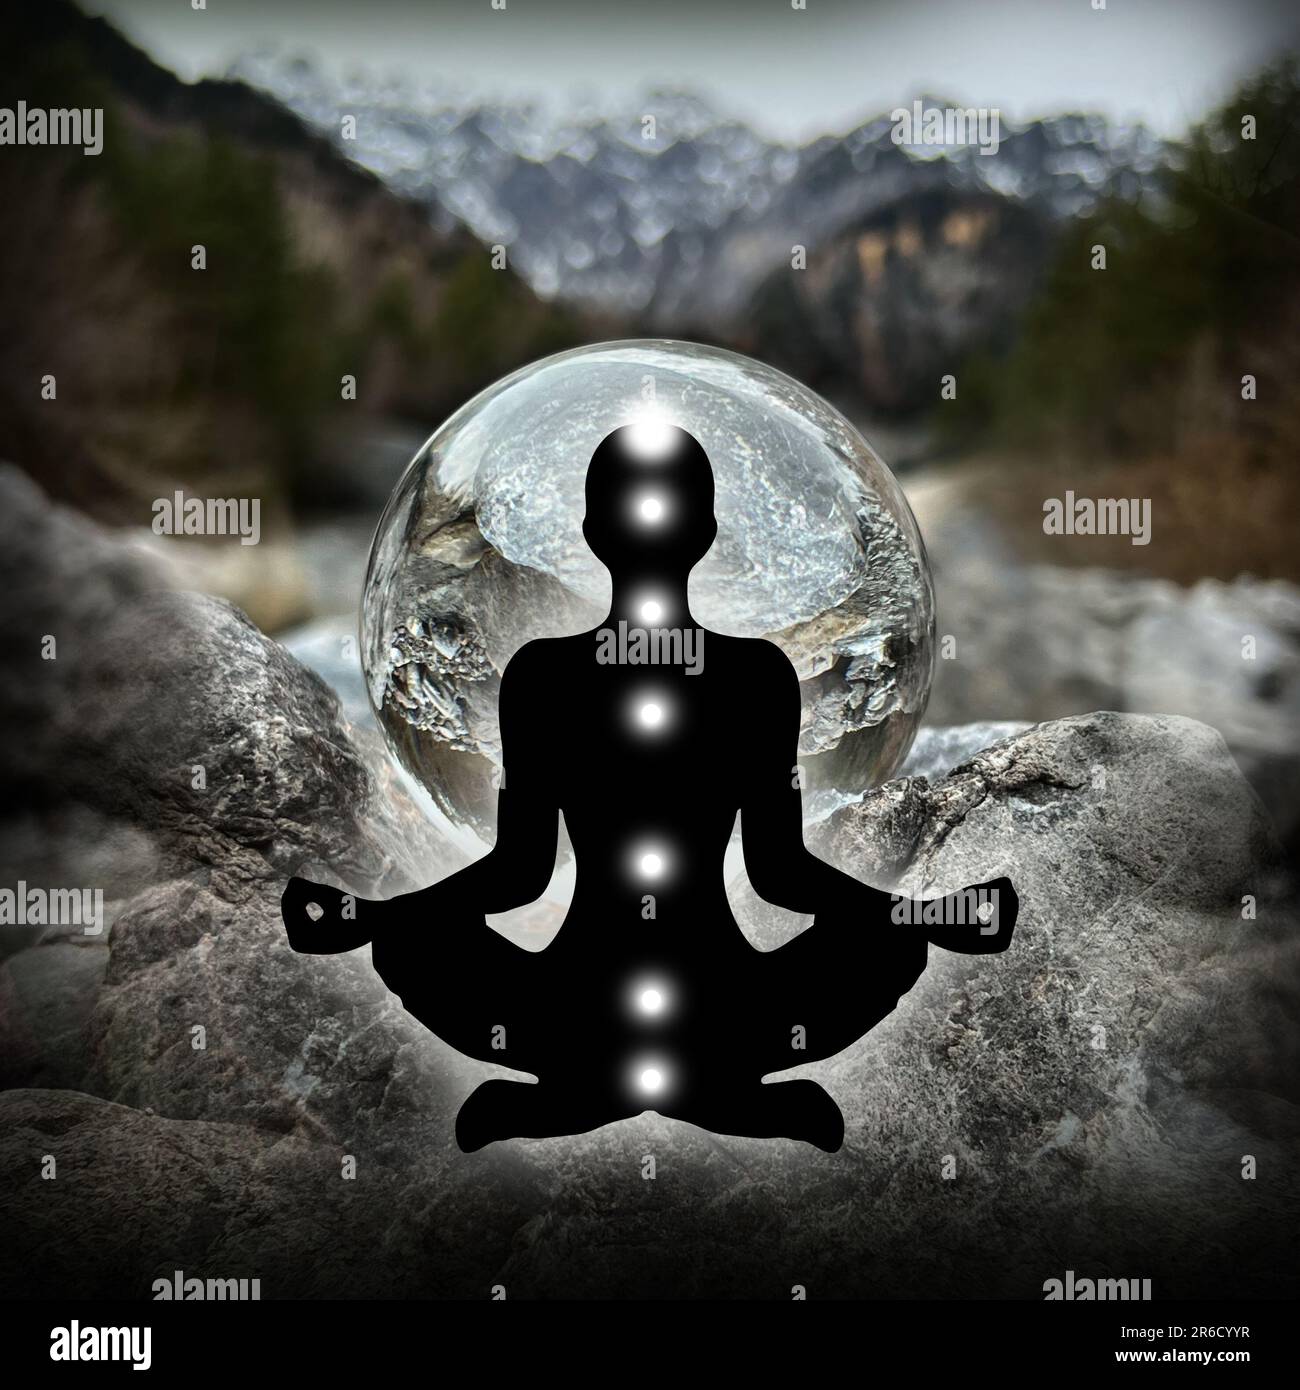 Silhouette humaine en yoga, pose de lotus (corps énergétique humain, aura) devant le lansball, boule de cristal (ruisseau/paysage alpin autrichien, Montafon) Banque D'Images